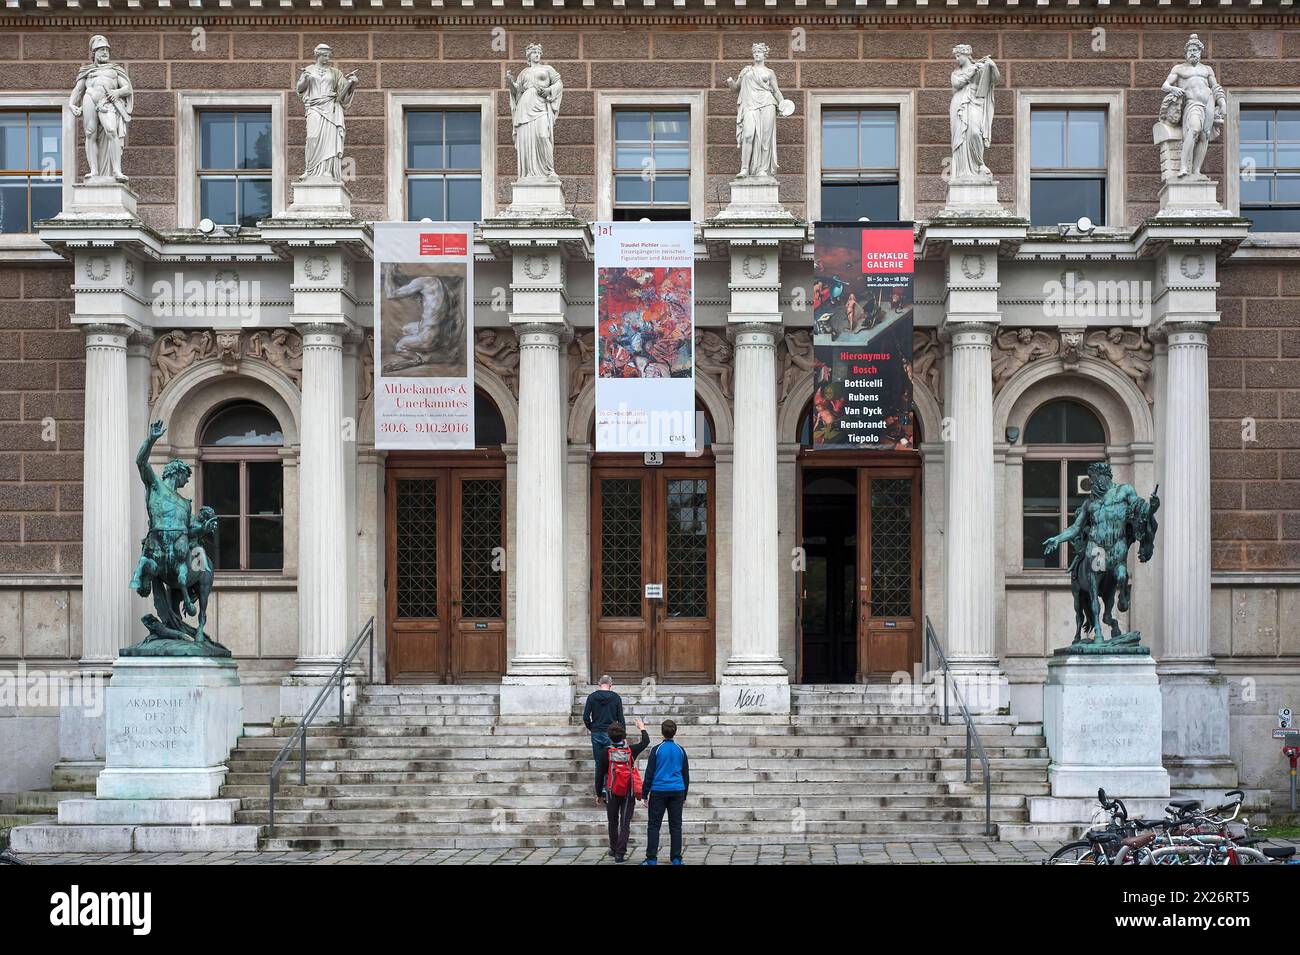 Portail d'entrée de l'Académie des Beaux-Arts, Renaissance italienne, ouvert en 1877, Vienne, Autriche Banque D'Images